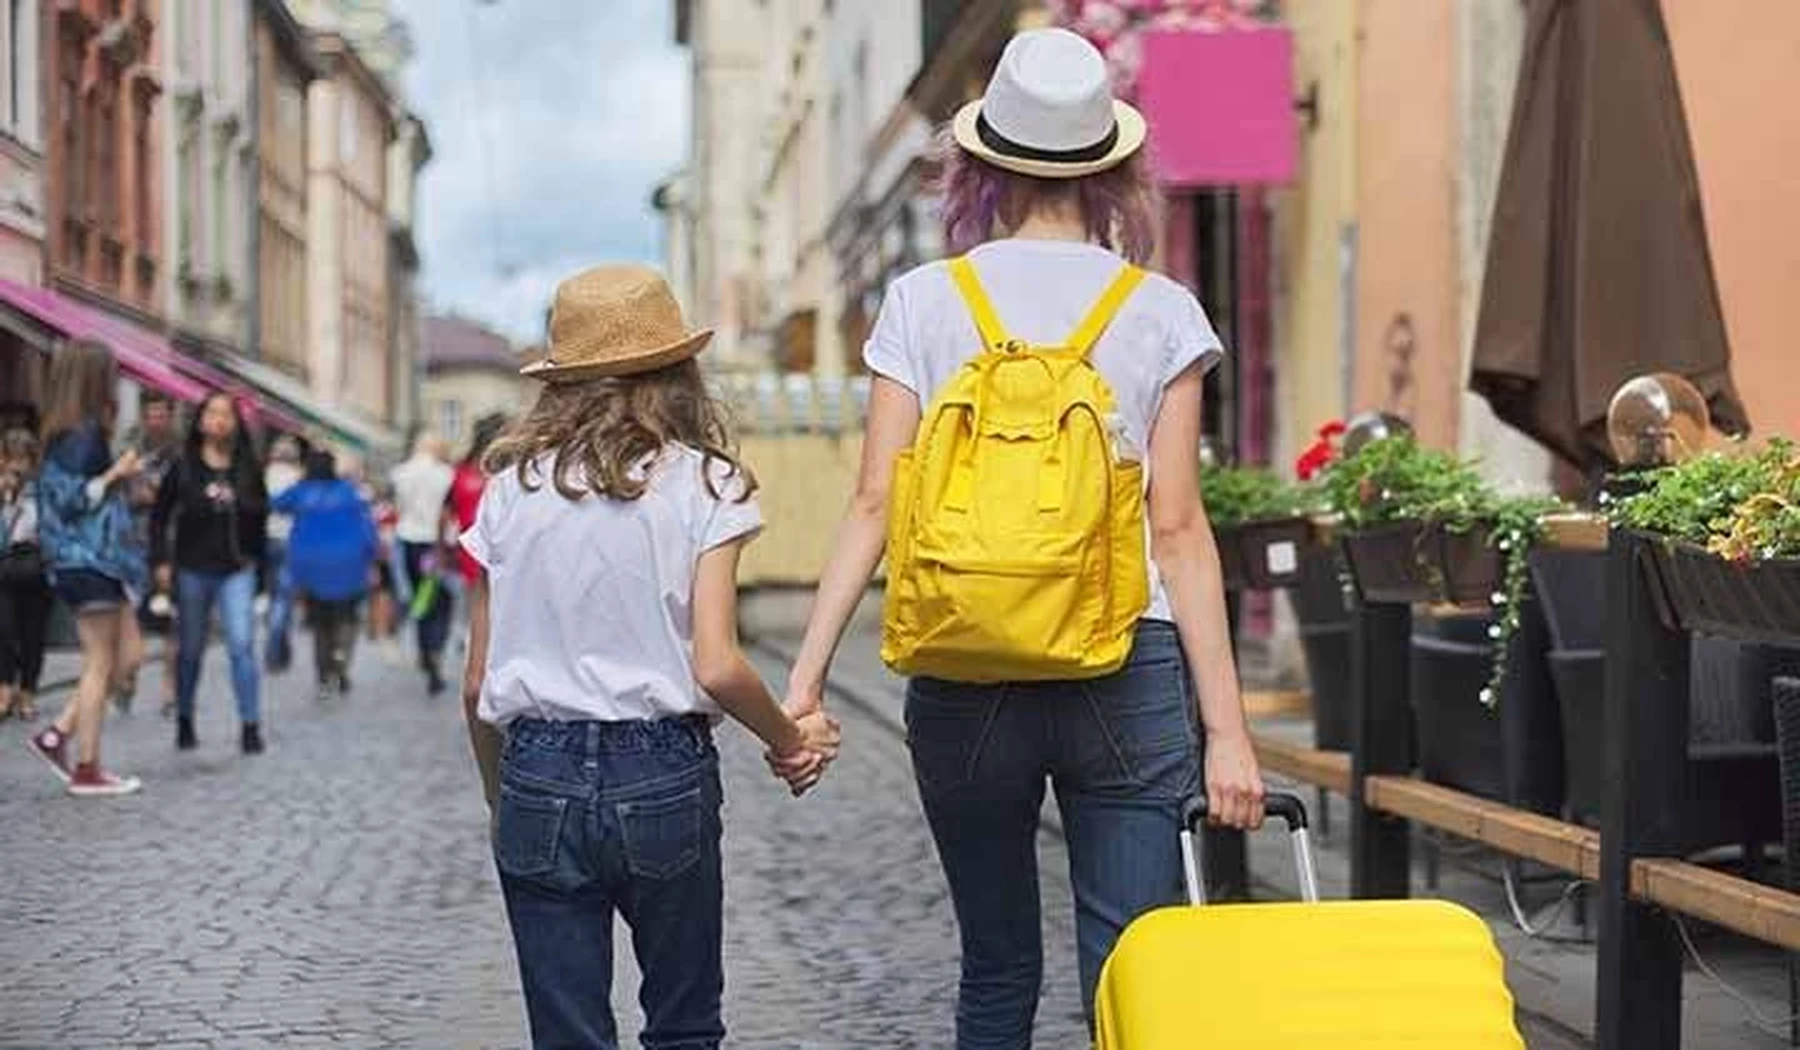 Vista posterior de una mujer joven con su hija de la mano llevando una maleta de ruedas amarilla y una mochila a juego mientras pasean haciendo turismo por una ciudad